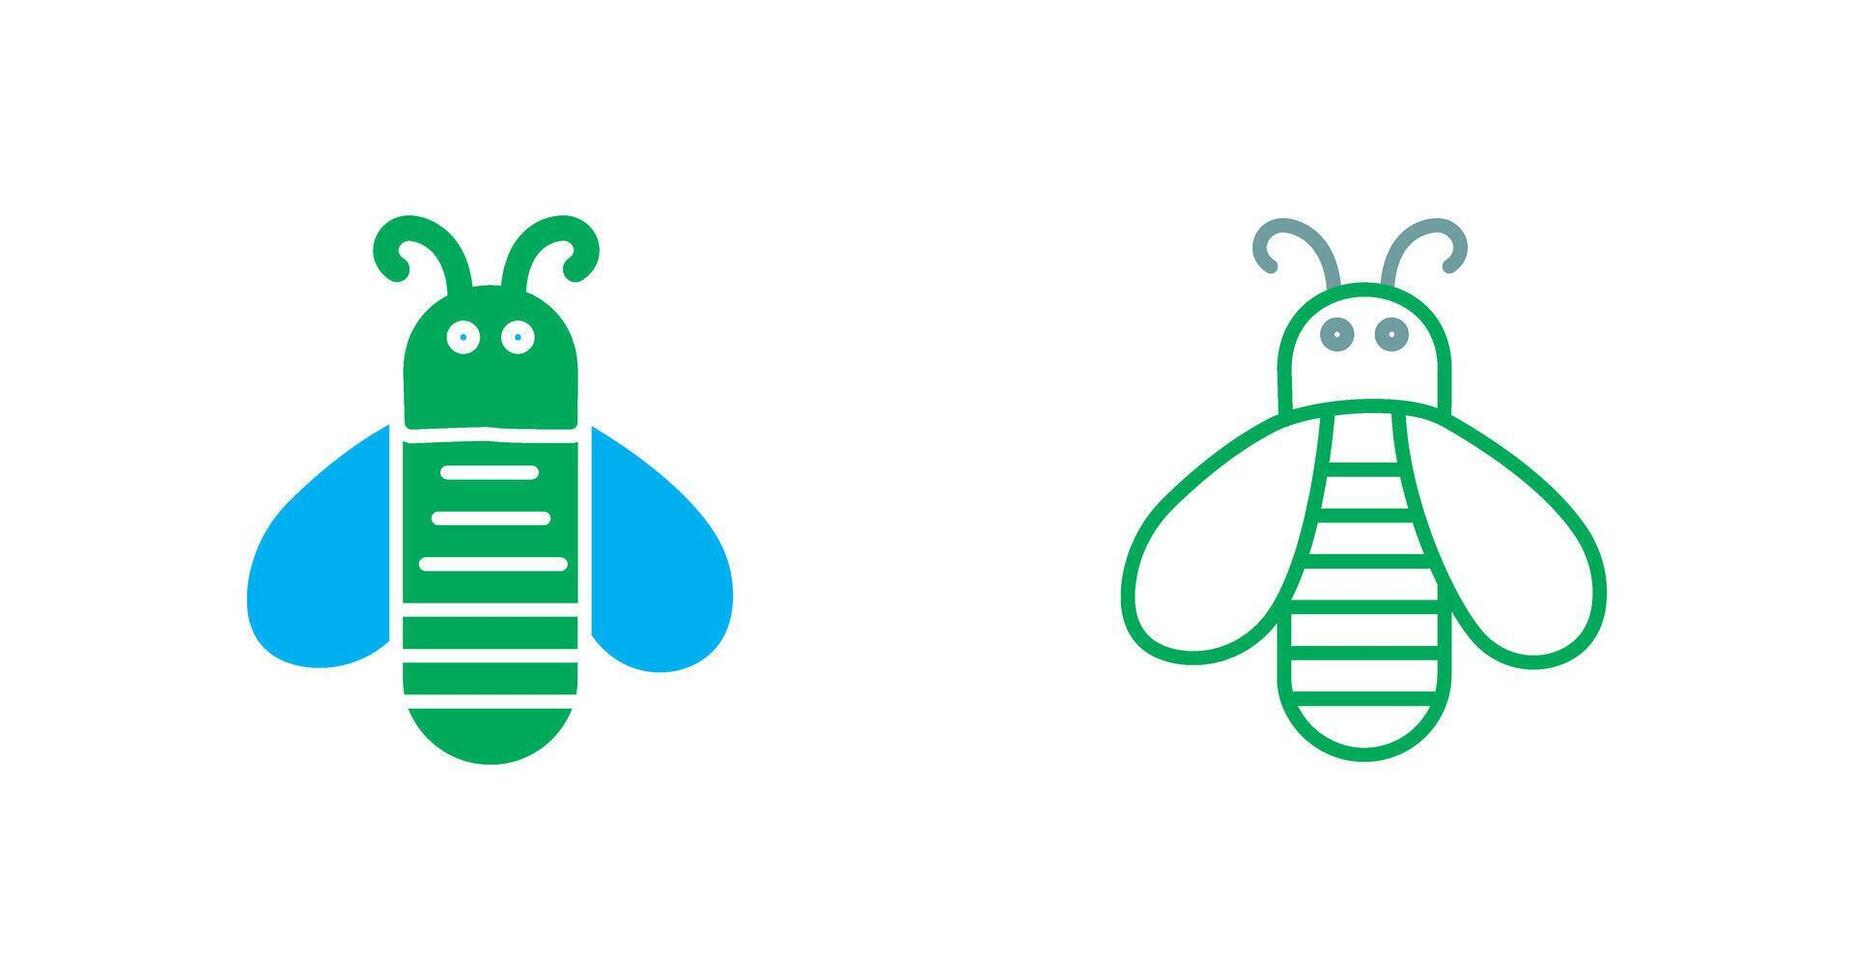 conception d'icône d'abeille vecteur